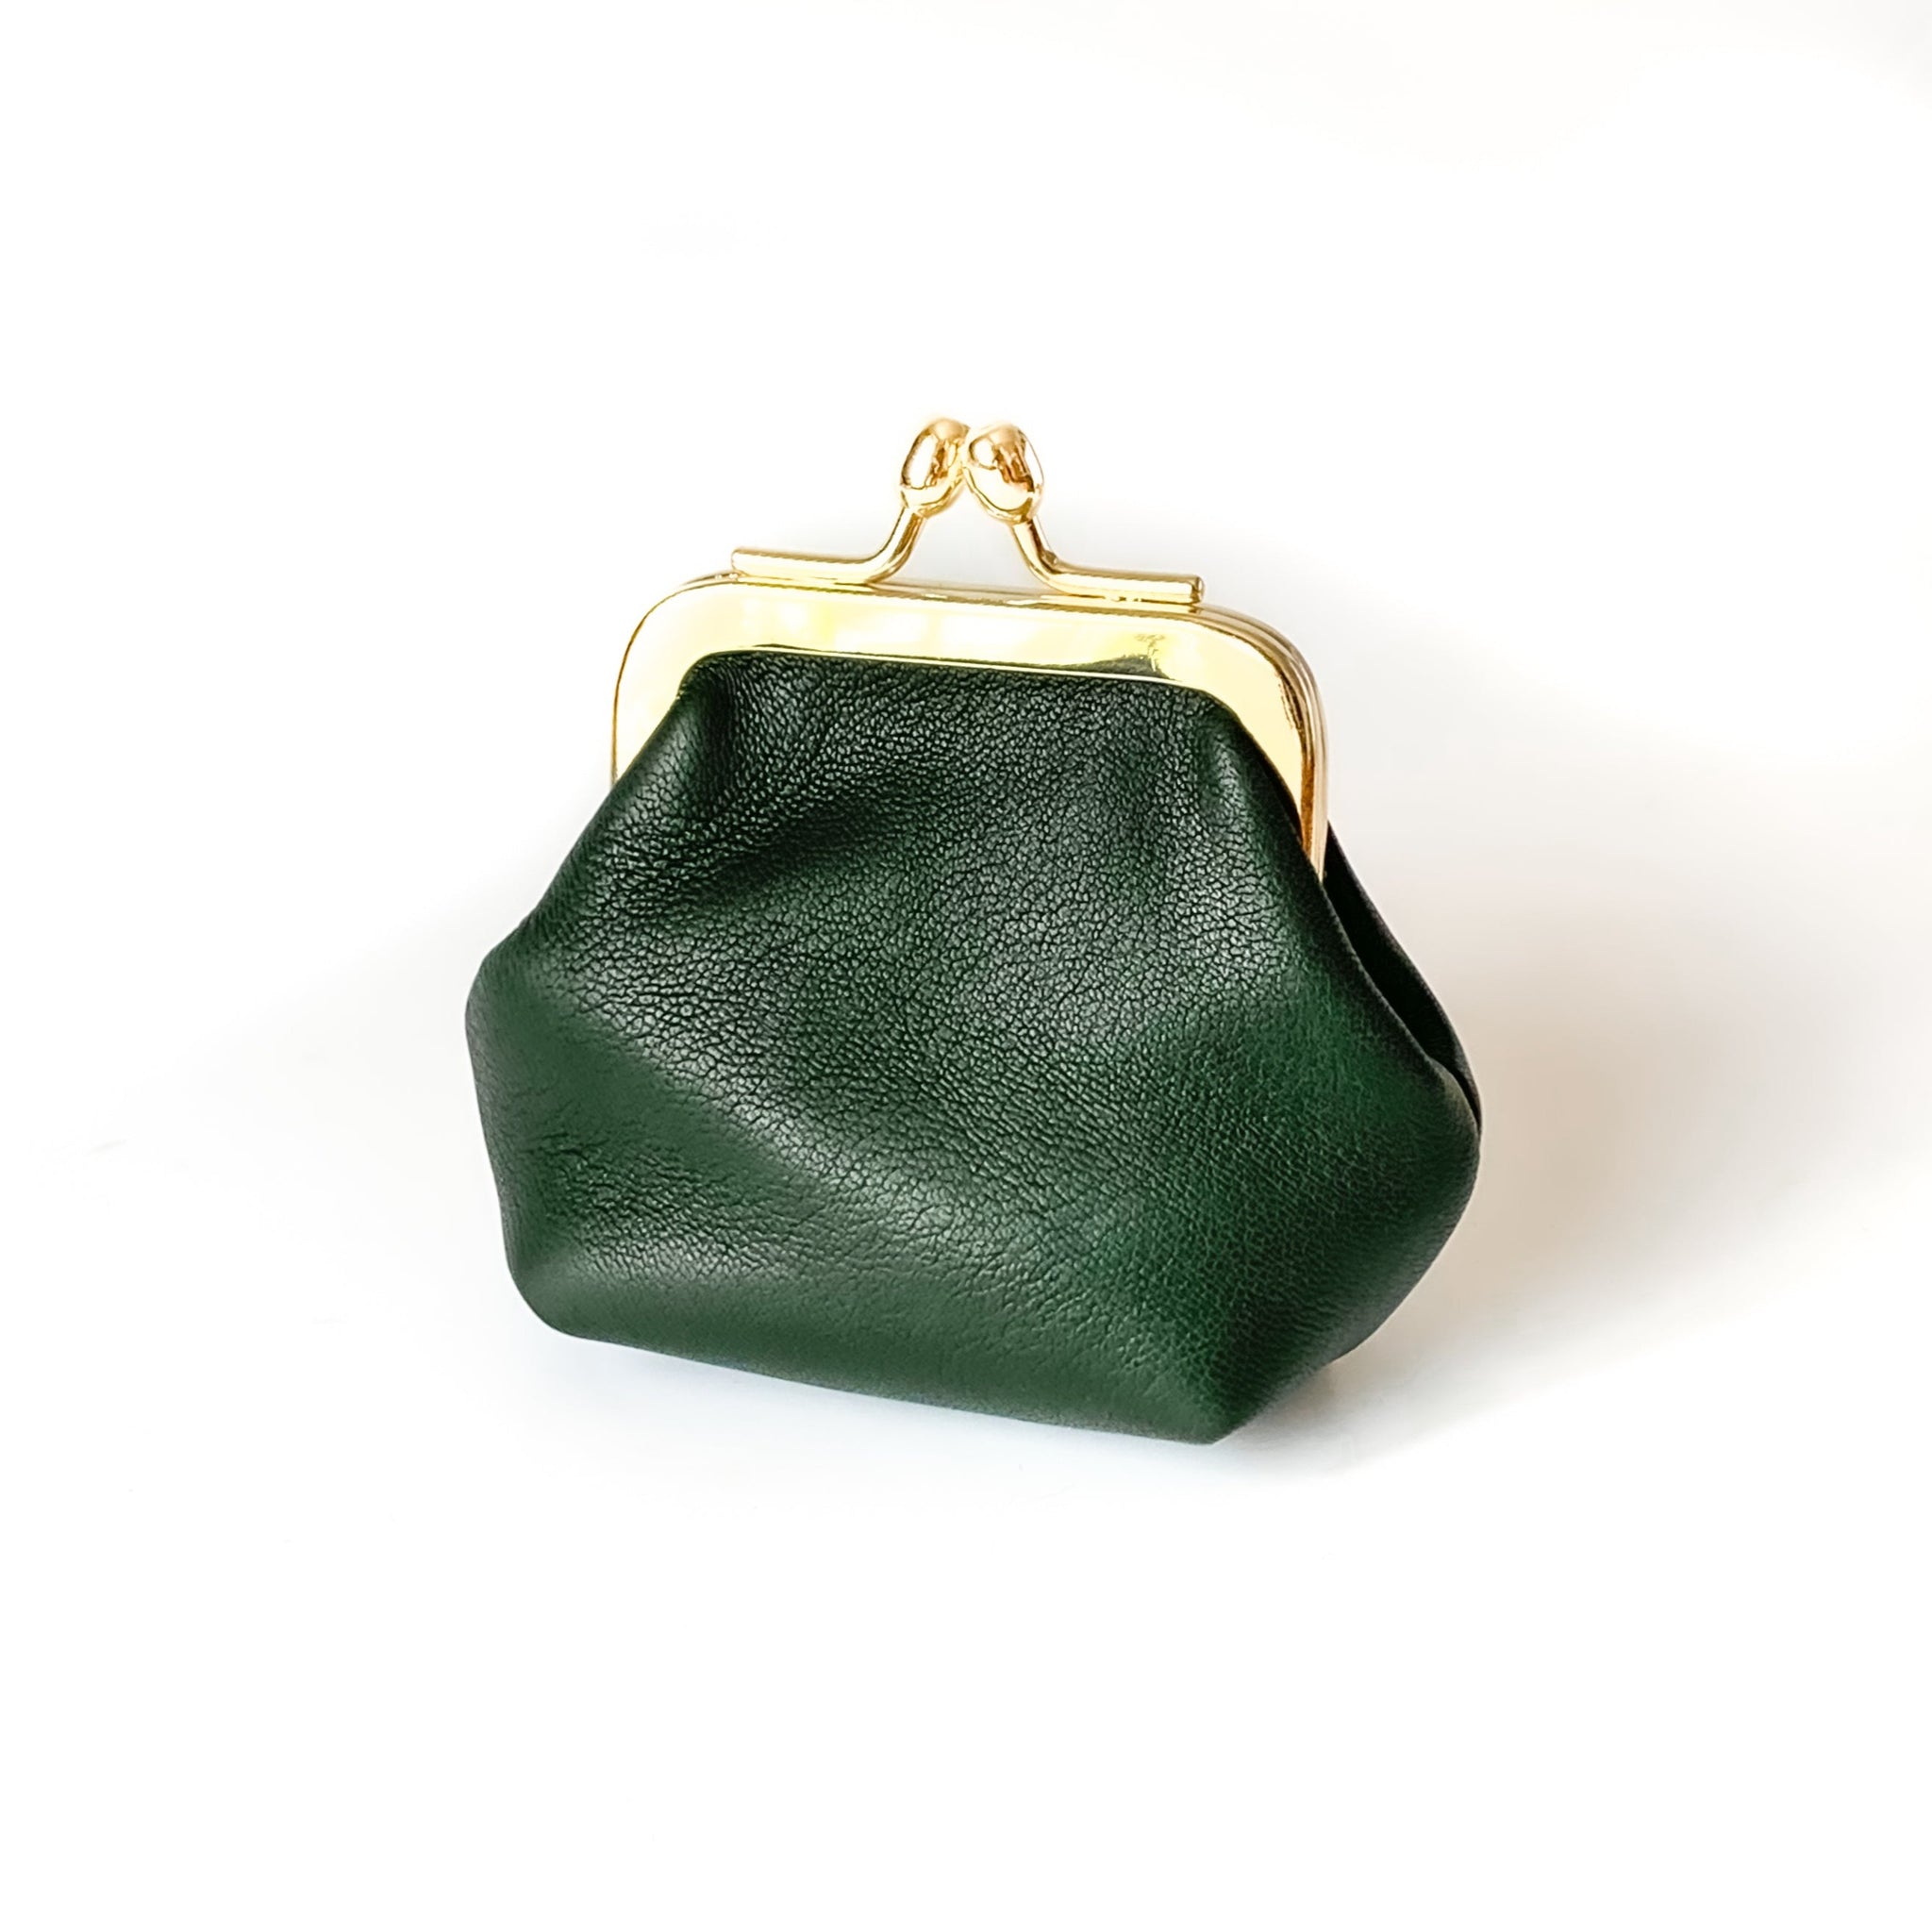 23 Best Green purse outfit ideas | green purse outfit, purse outfit, green  purse